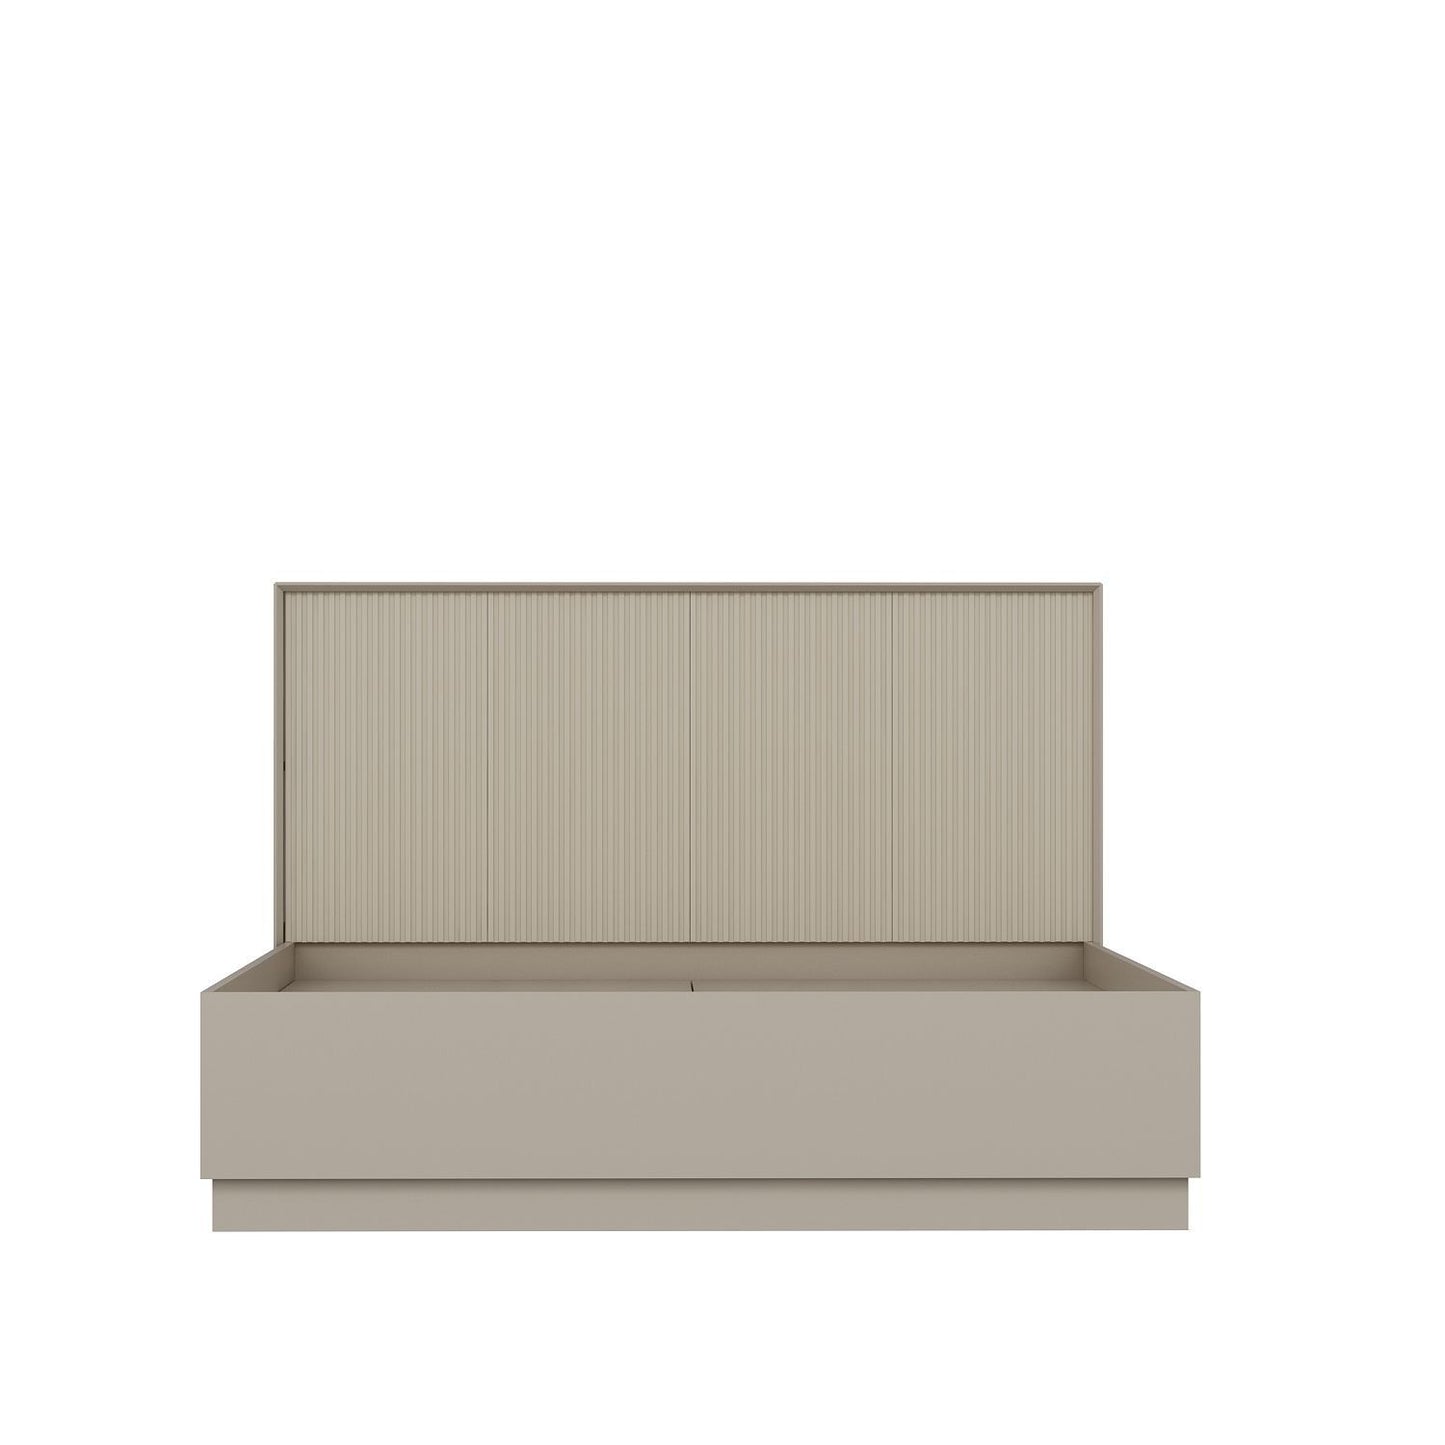 Kale 160 x 200 - Stone - Double Bed Base & Headboard